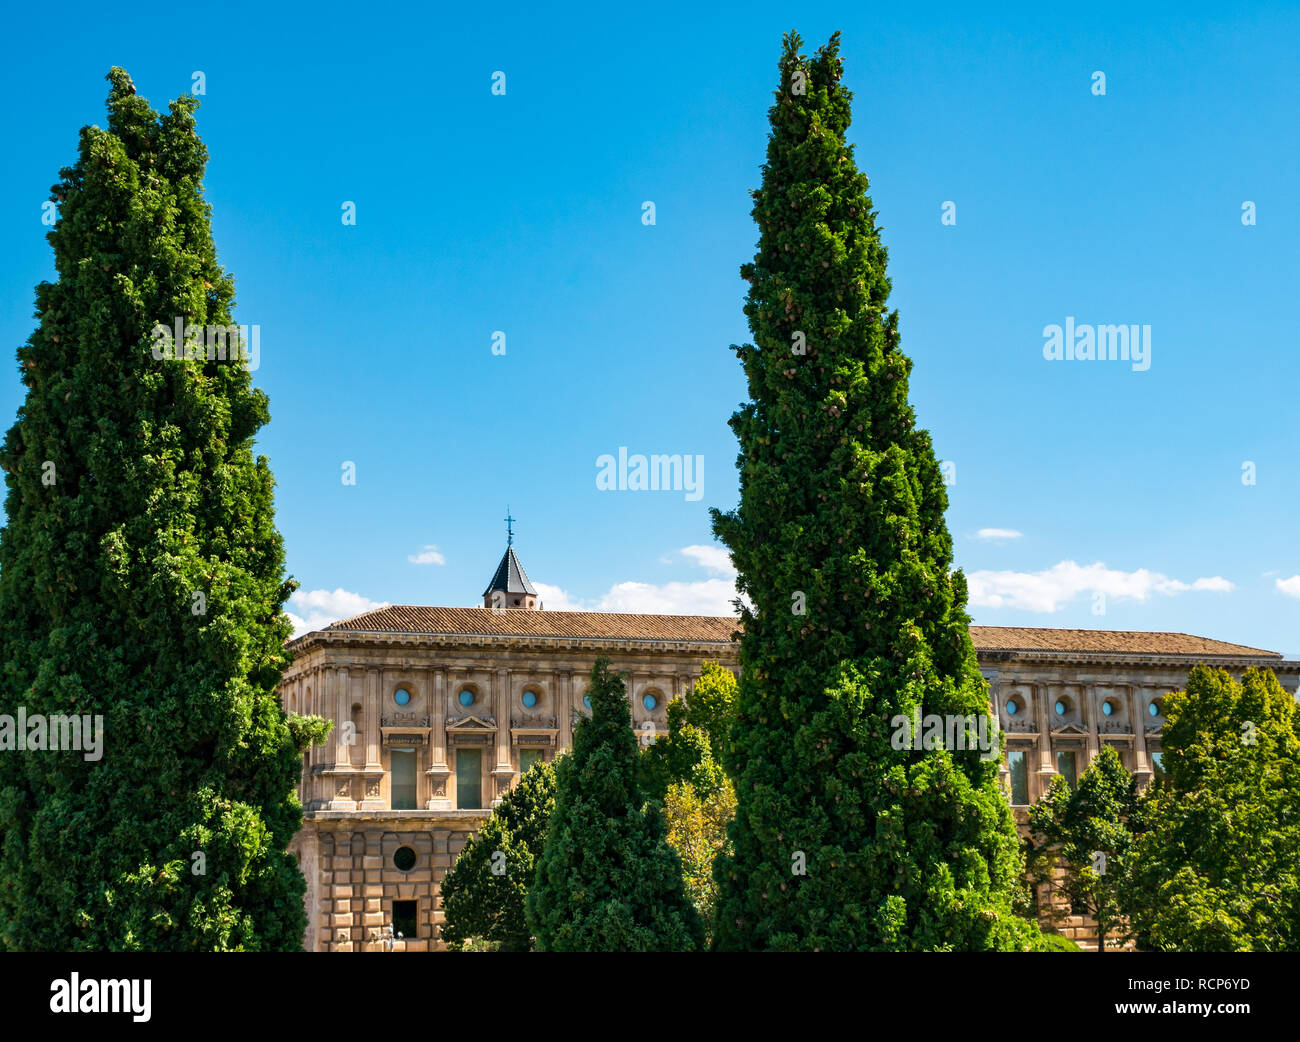 Carlos V Palace vue à travers les arbres, à l'Alhambra, Grenade, Andalousie, Espagne Banque D'Images